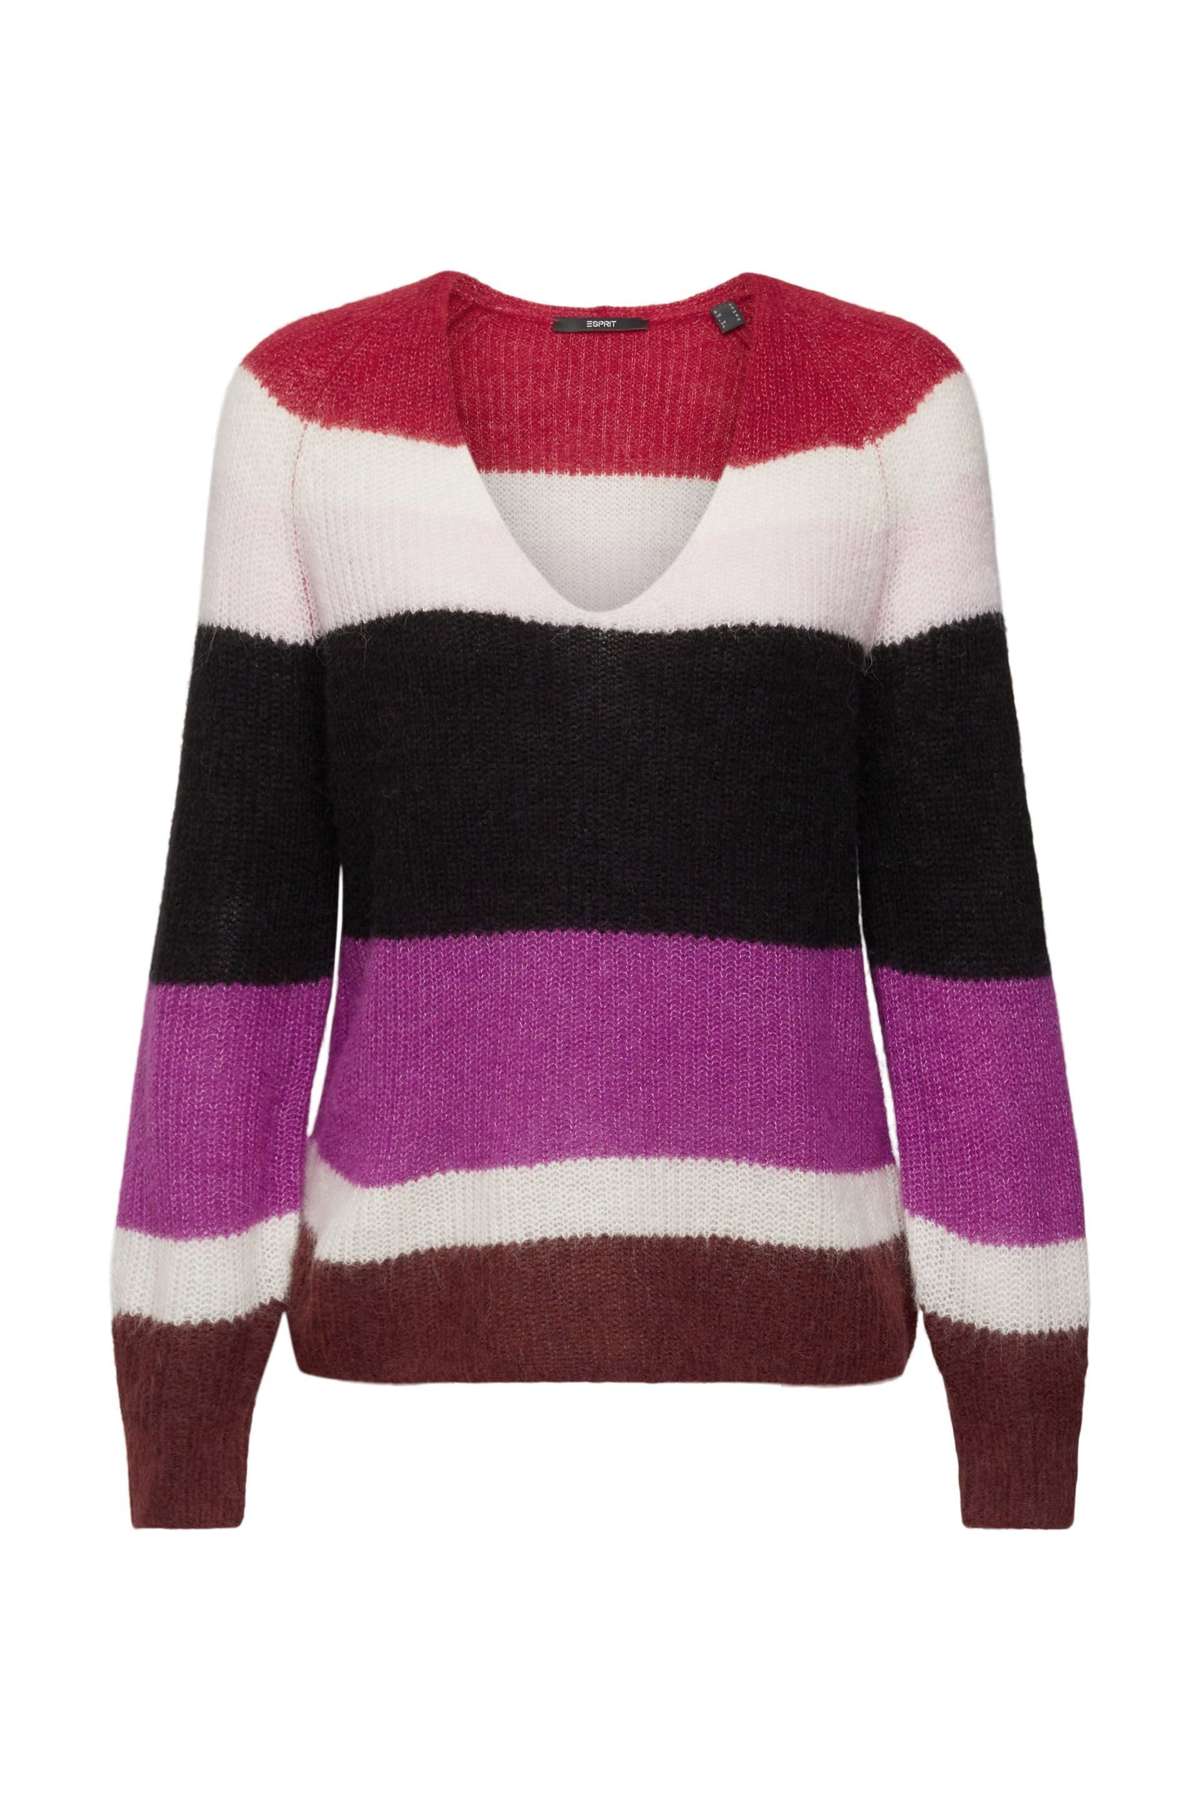 Коллекция Свитер с V-образным вырезом Полосатый свитер с V-образным вырезом из шерсти и альпаки